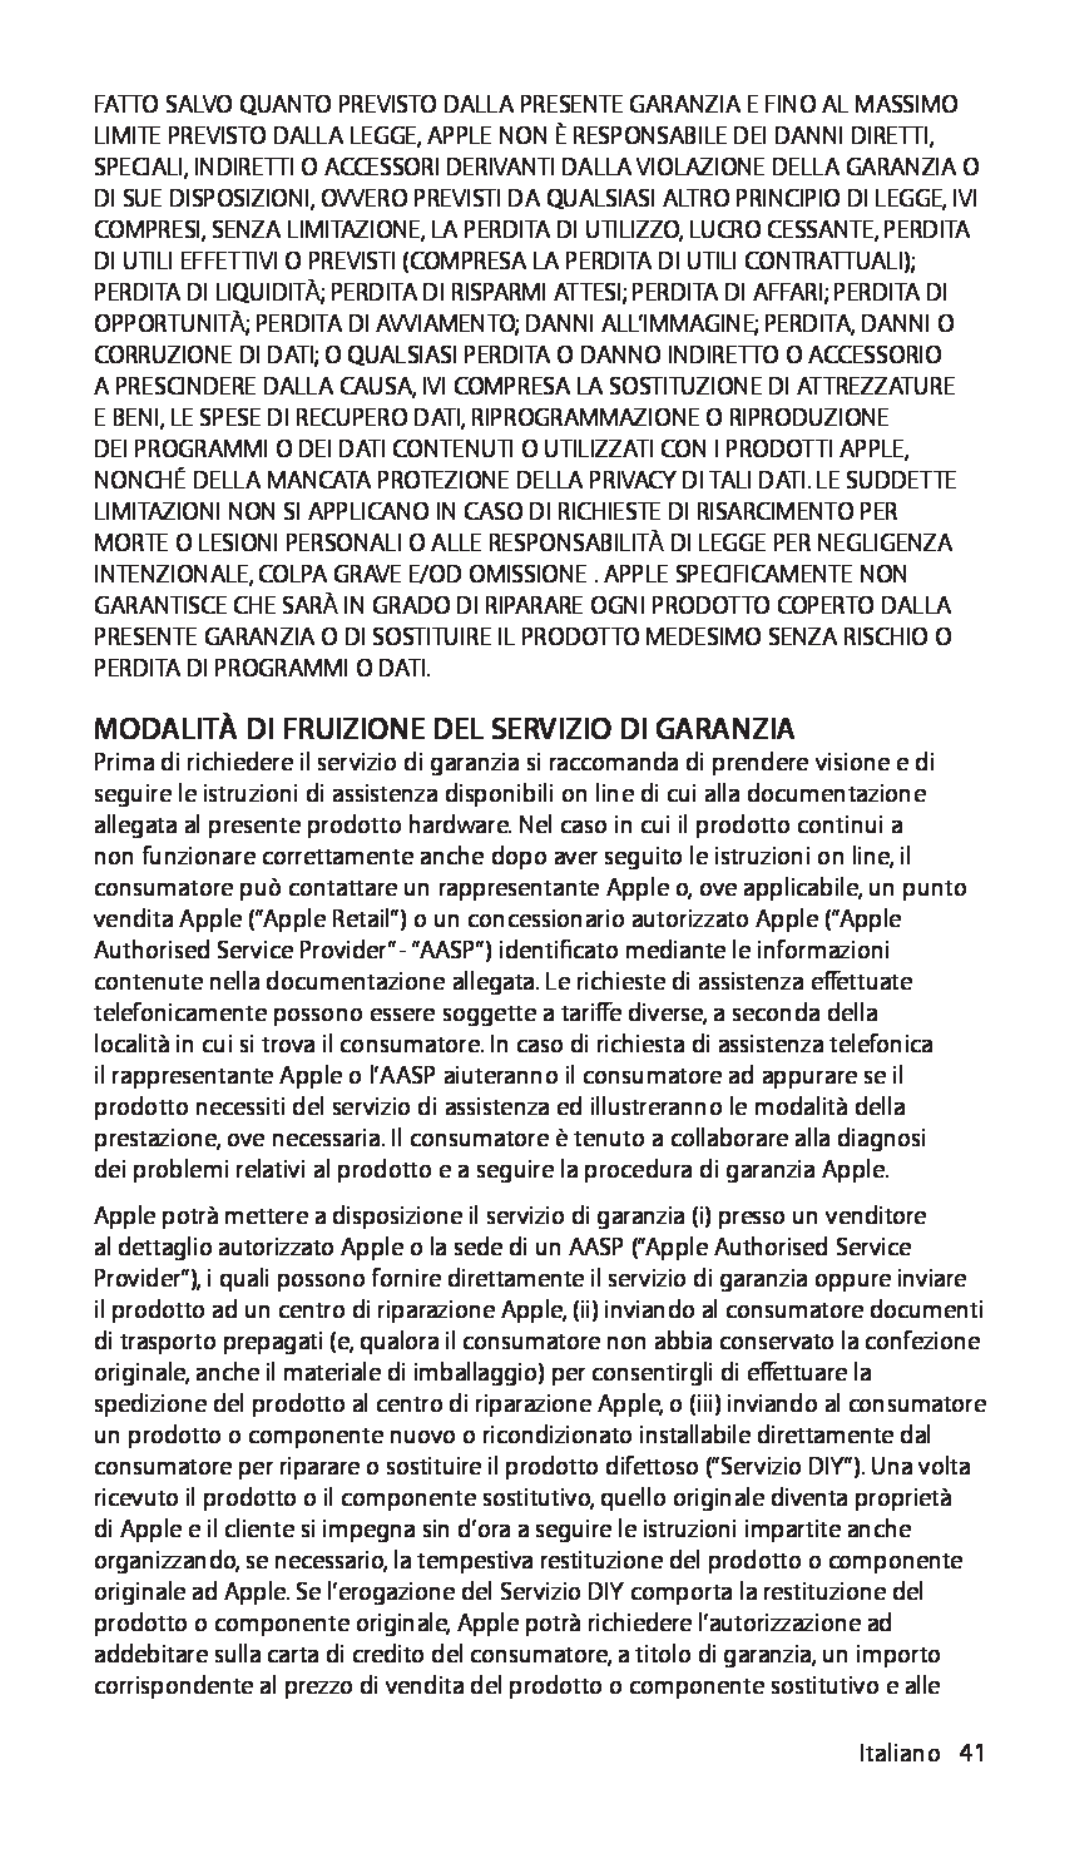 Apple ZM034-4942-A manual Modalità Di Fruizione Del Servizio Di Garanzia, Italiano41 